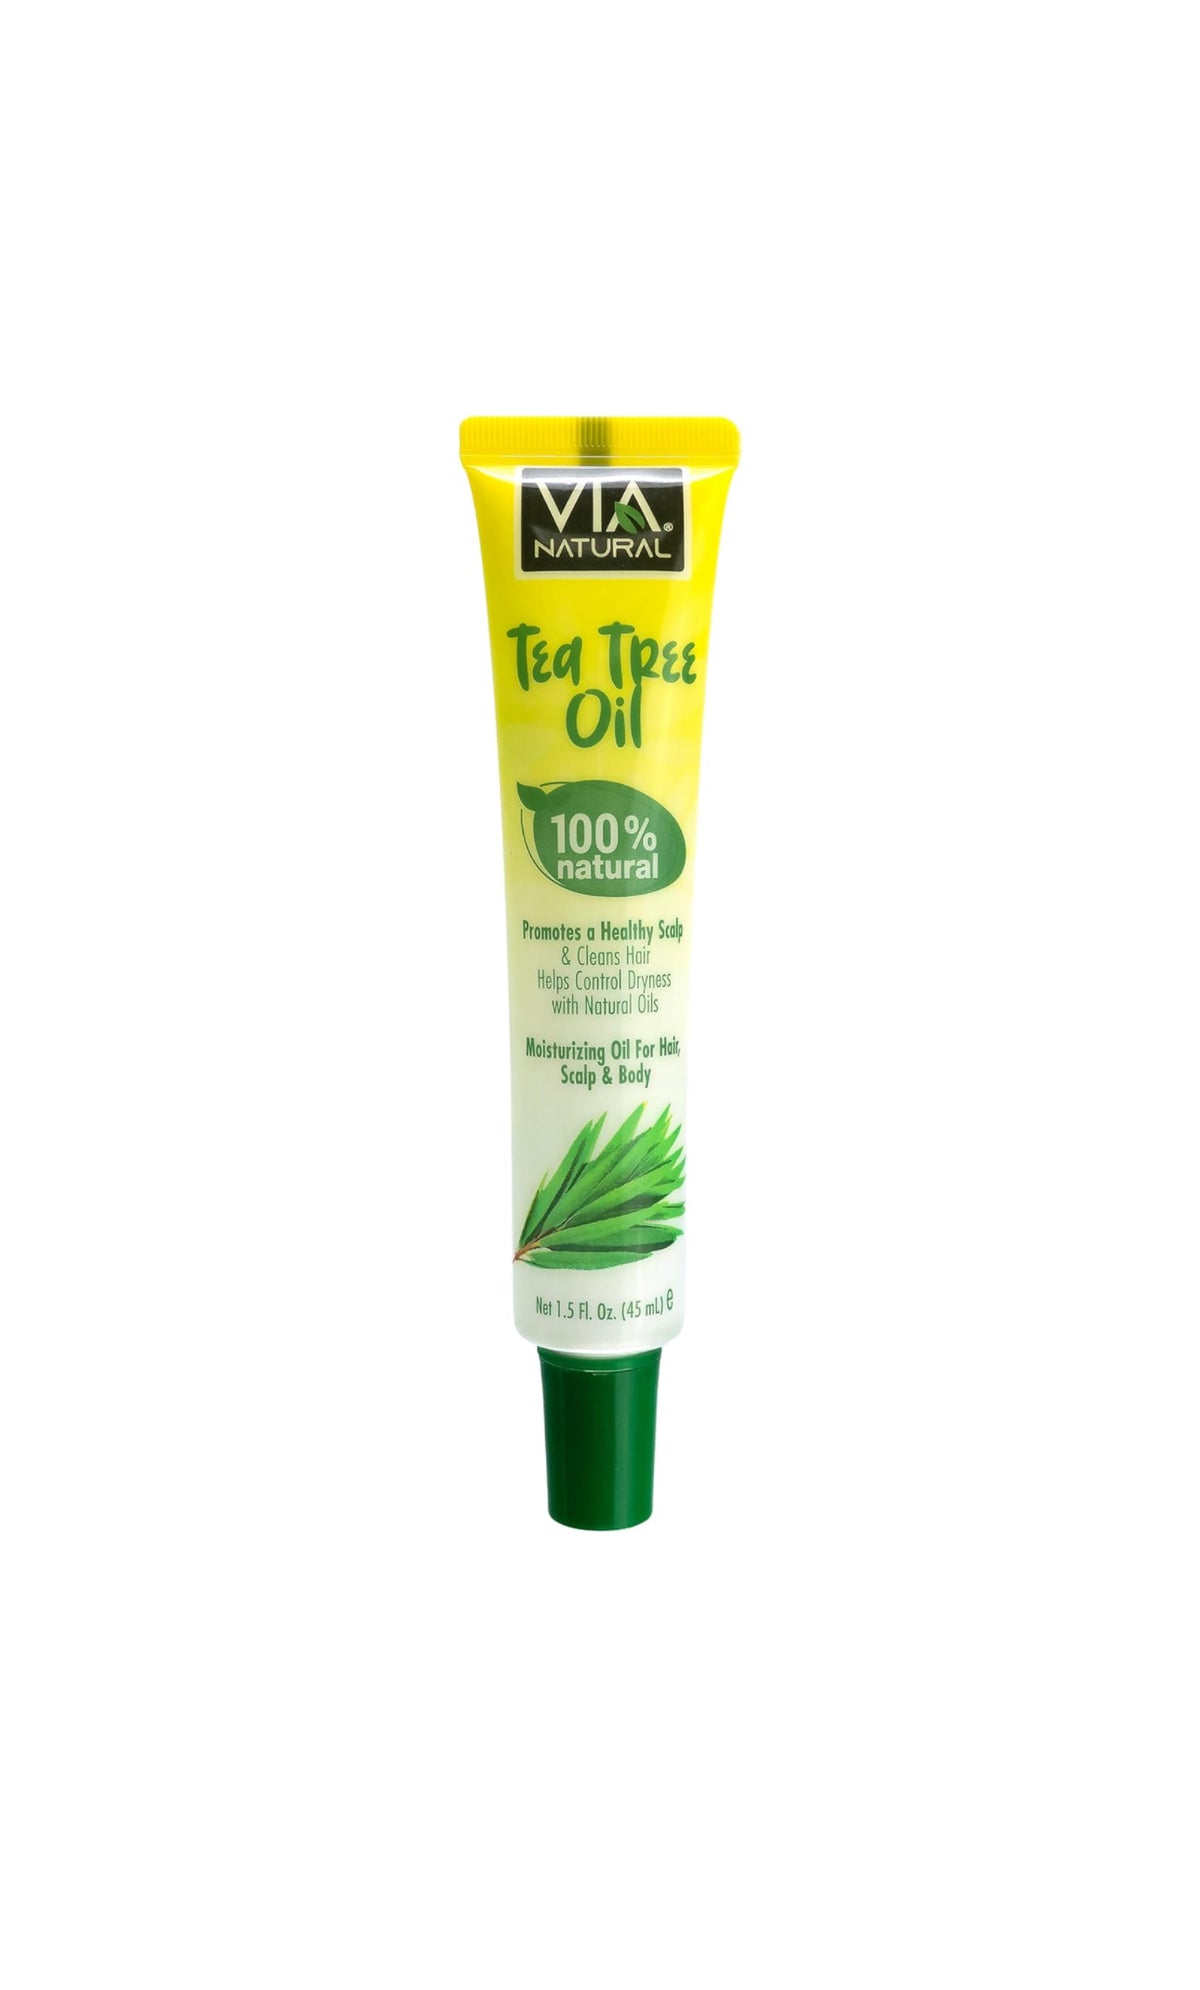 Via Natural 100% Tee Tree Oil